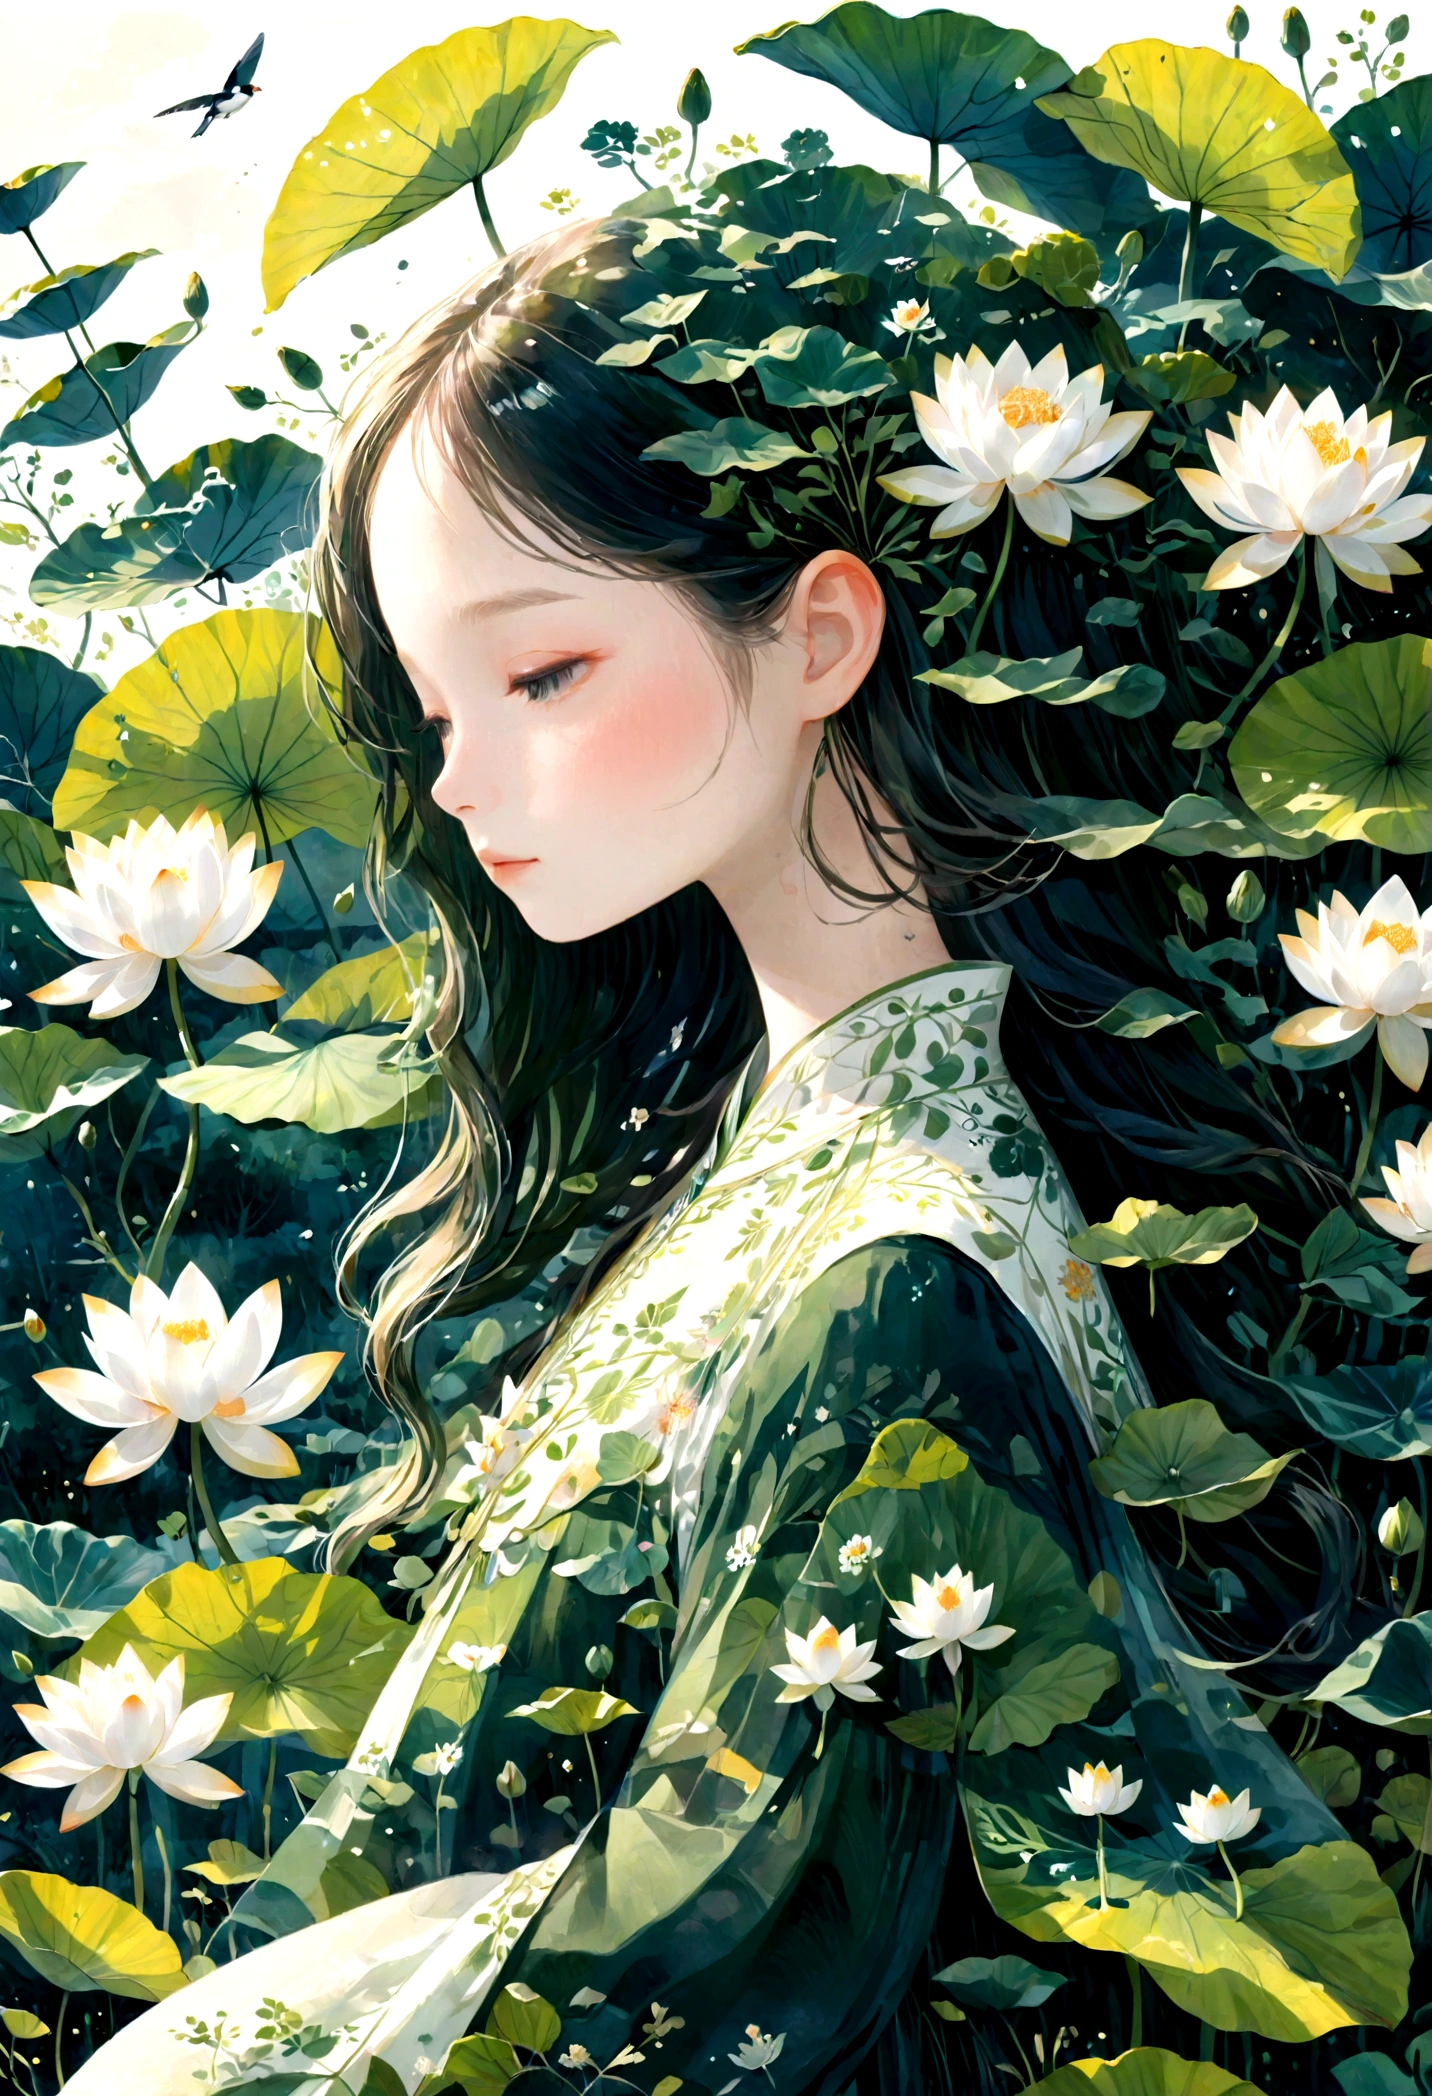    중국 한푸를 입은 긴 머리를 가진 아름답고 세밀한 소녀의 이중 노출 평면 벡터(얼굴이 맑음, beautiful and 완벽한)영상 ( 완벽한解剖结构 ) ，배경은 거대한 흰색 연꽃과 거대한 연꽃 잎입니다.(반투명 흰색 연꽃 연꽃 잎) 완벽한, 아름답게, 복잡한 잉크 일러스트레이션 스타일,   꿈꾸는듯한 천상의 예술 작품 개념 예술 작품 걸작, 최고의 품질, 매우 상세한, 고품질의 세심한 수채화 스타일 플랫 벡터 

                          